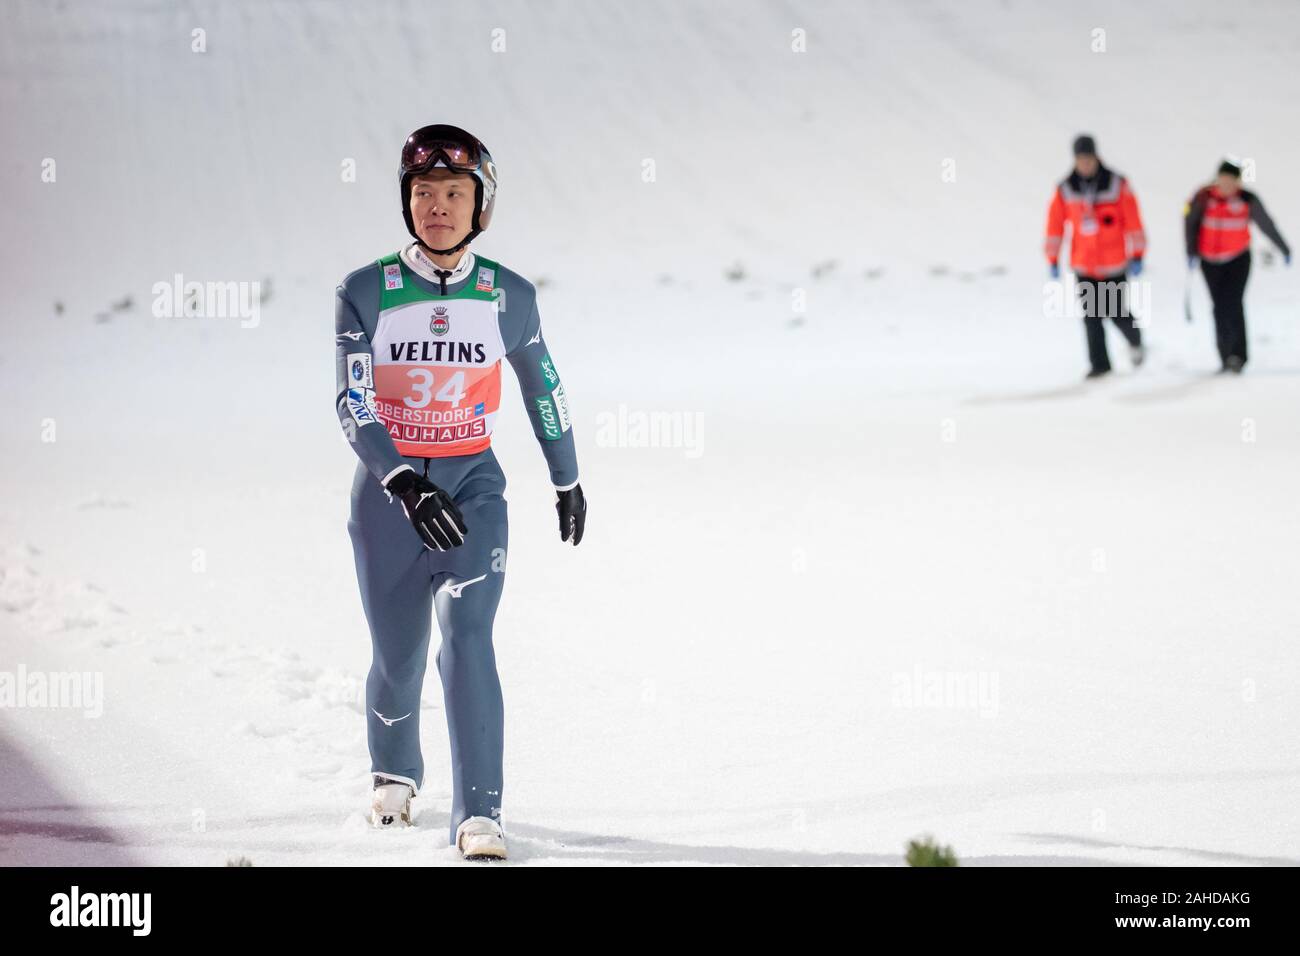 Oberstdorf, Germany. 28th Dec, 2019. Nordic skiing/ski jumping ...